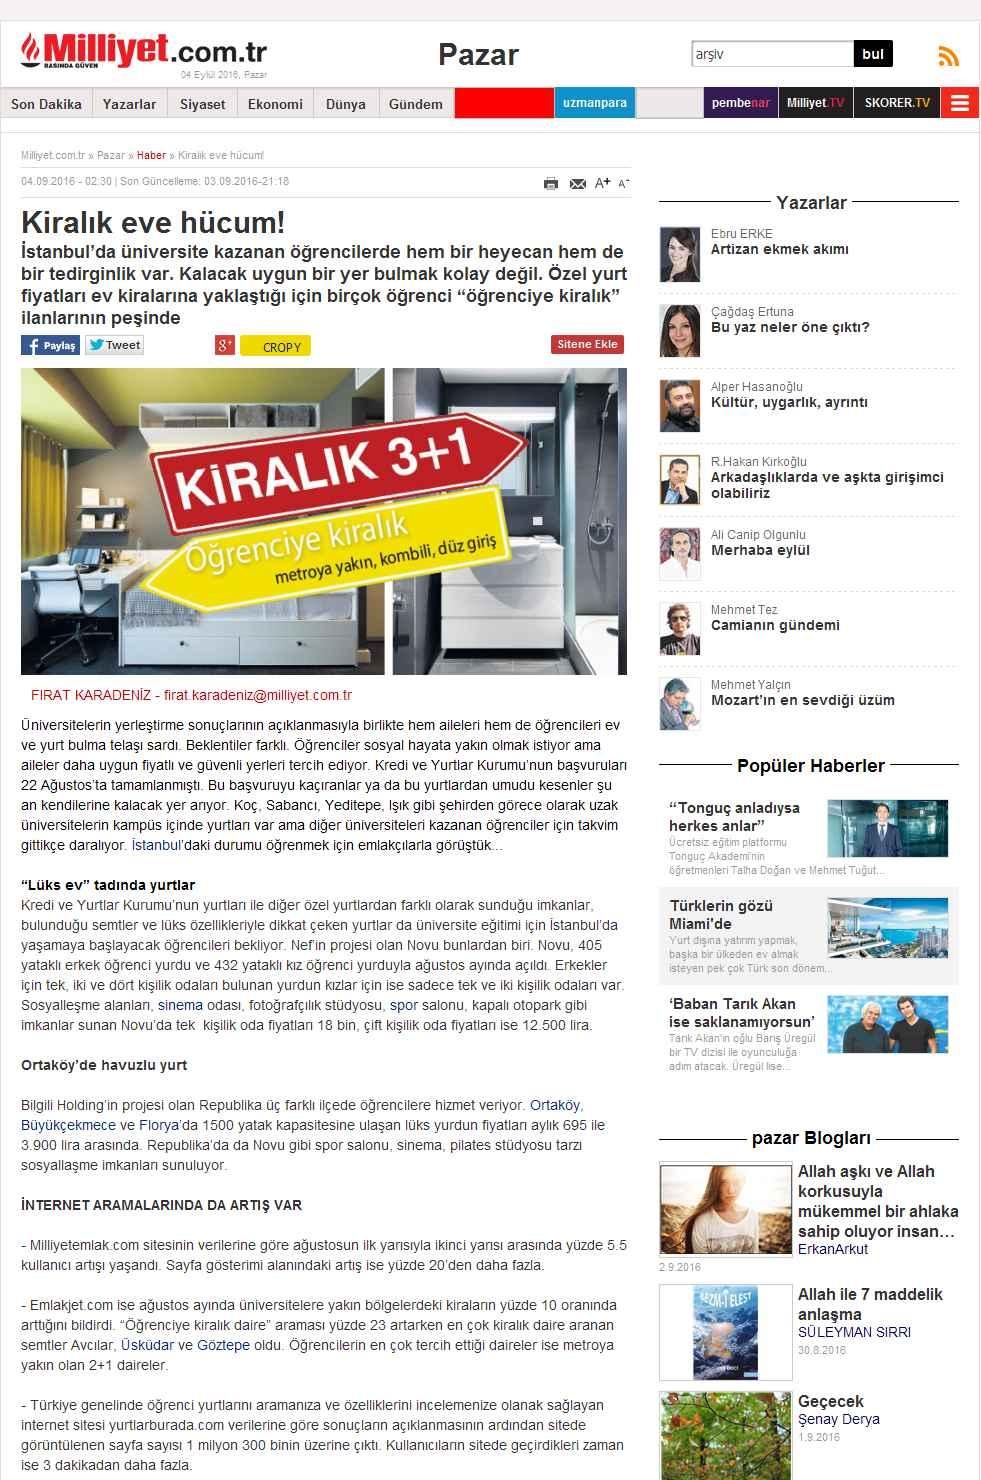 Portal Adres KIRALIK EVE HÜCUM! : www.milliyet.com.tr İçeriği : Gündem Tarih : 04.09.